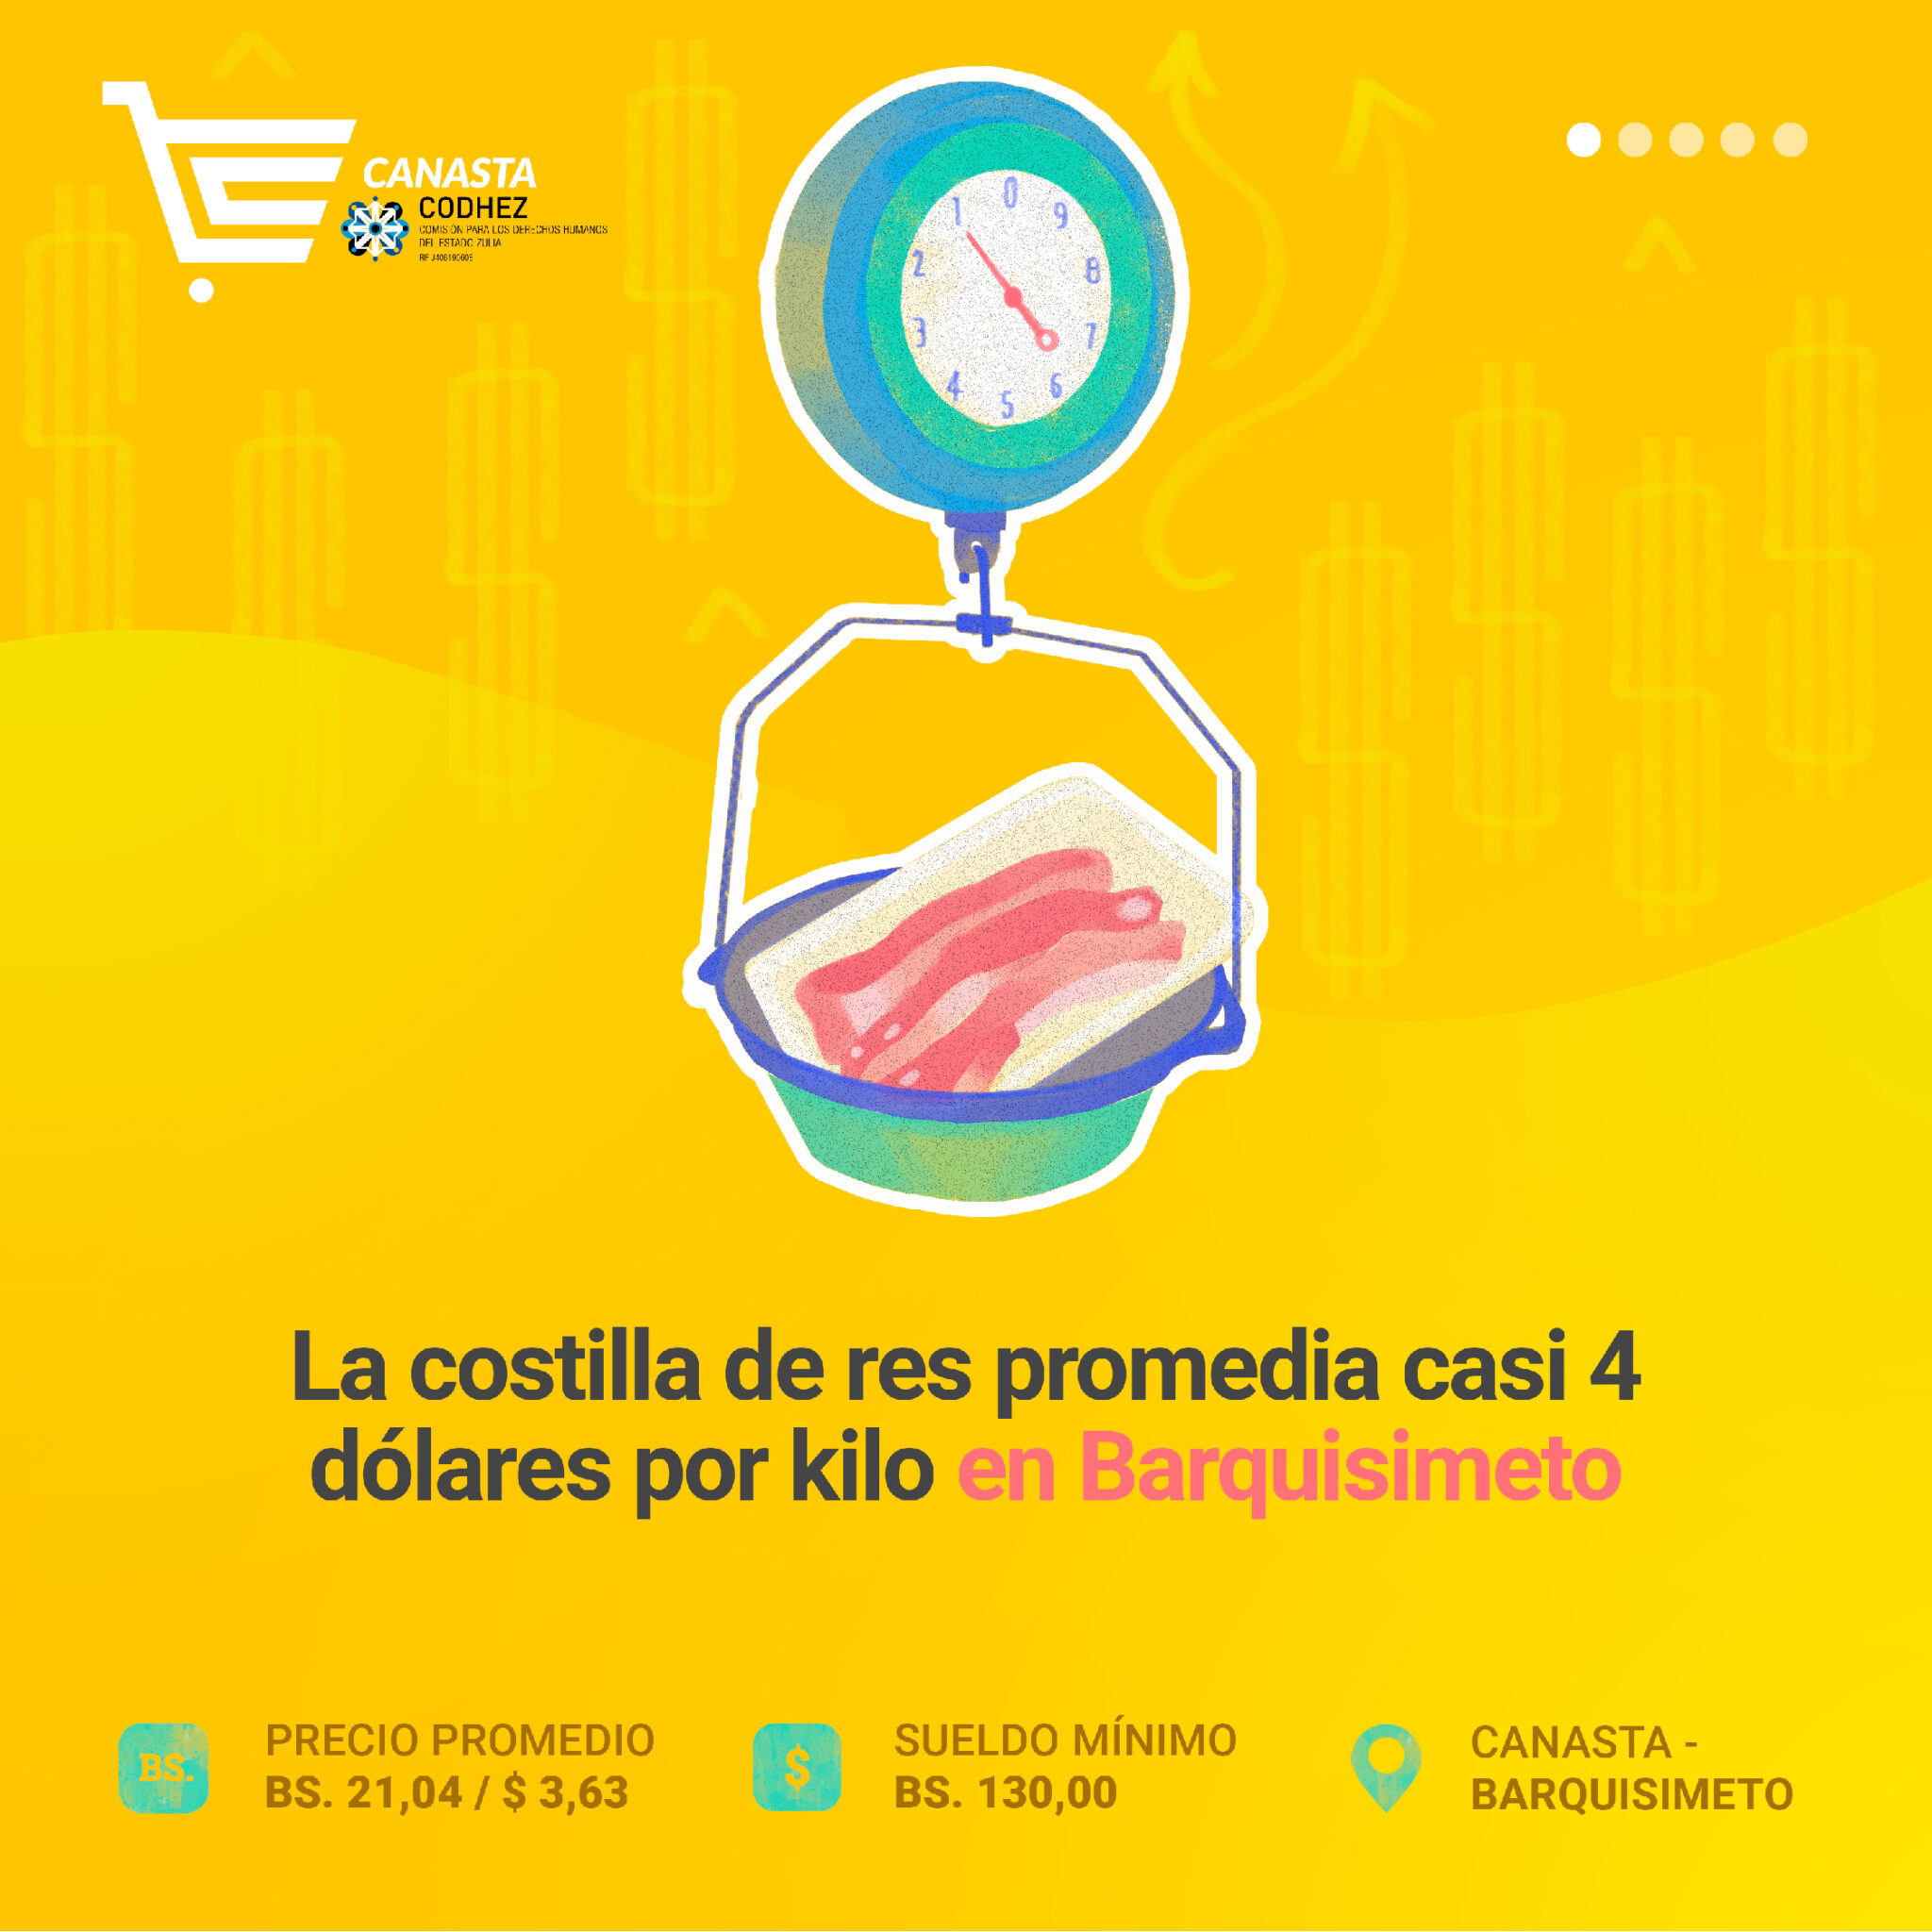 Los barquisimetanos deben disponer de casi 4 dólares para comprar un kilo de costilla de res